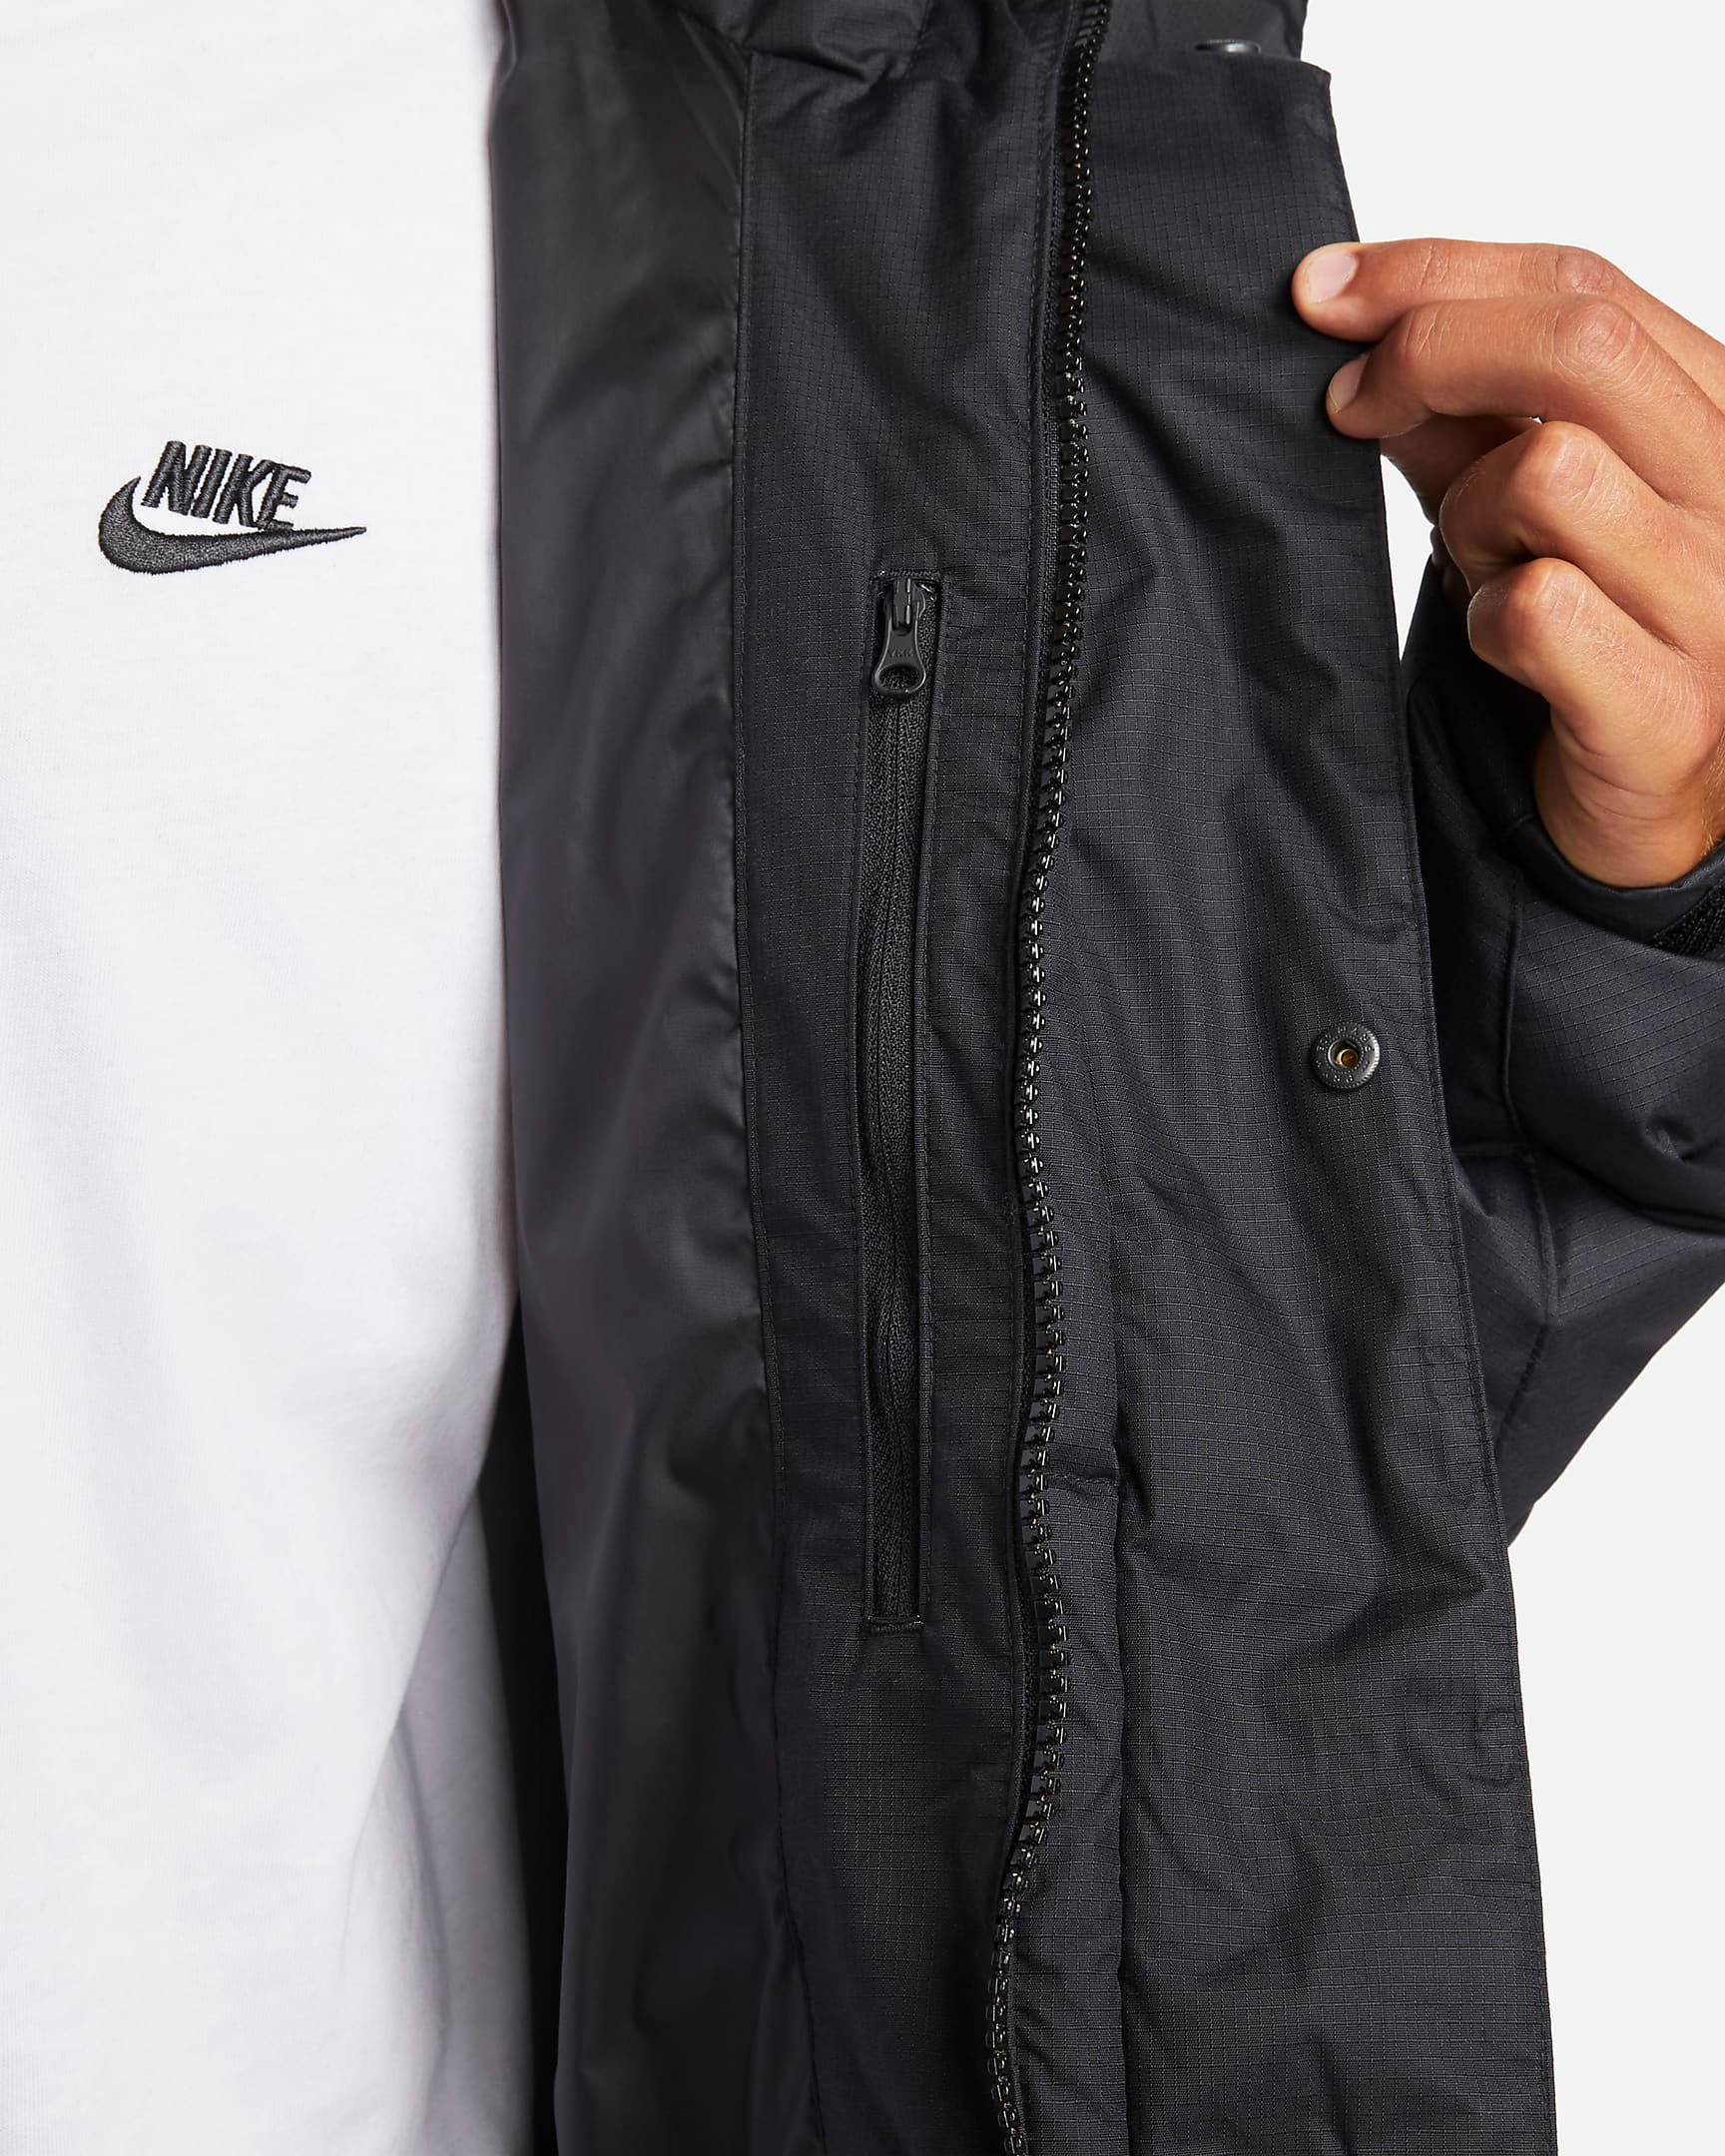 Nike Sportswear Storm-FIT City Series Men's Hooded Jacket.